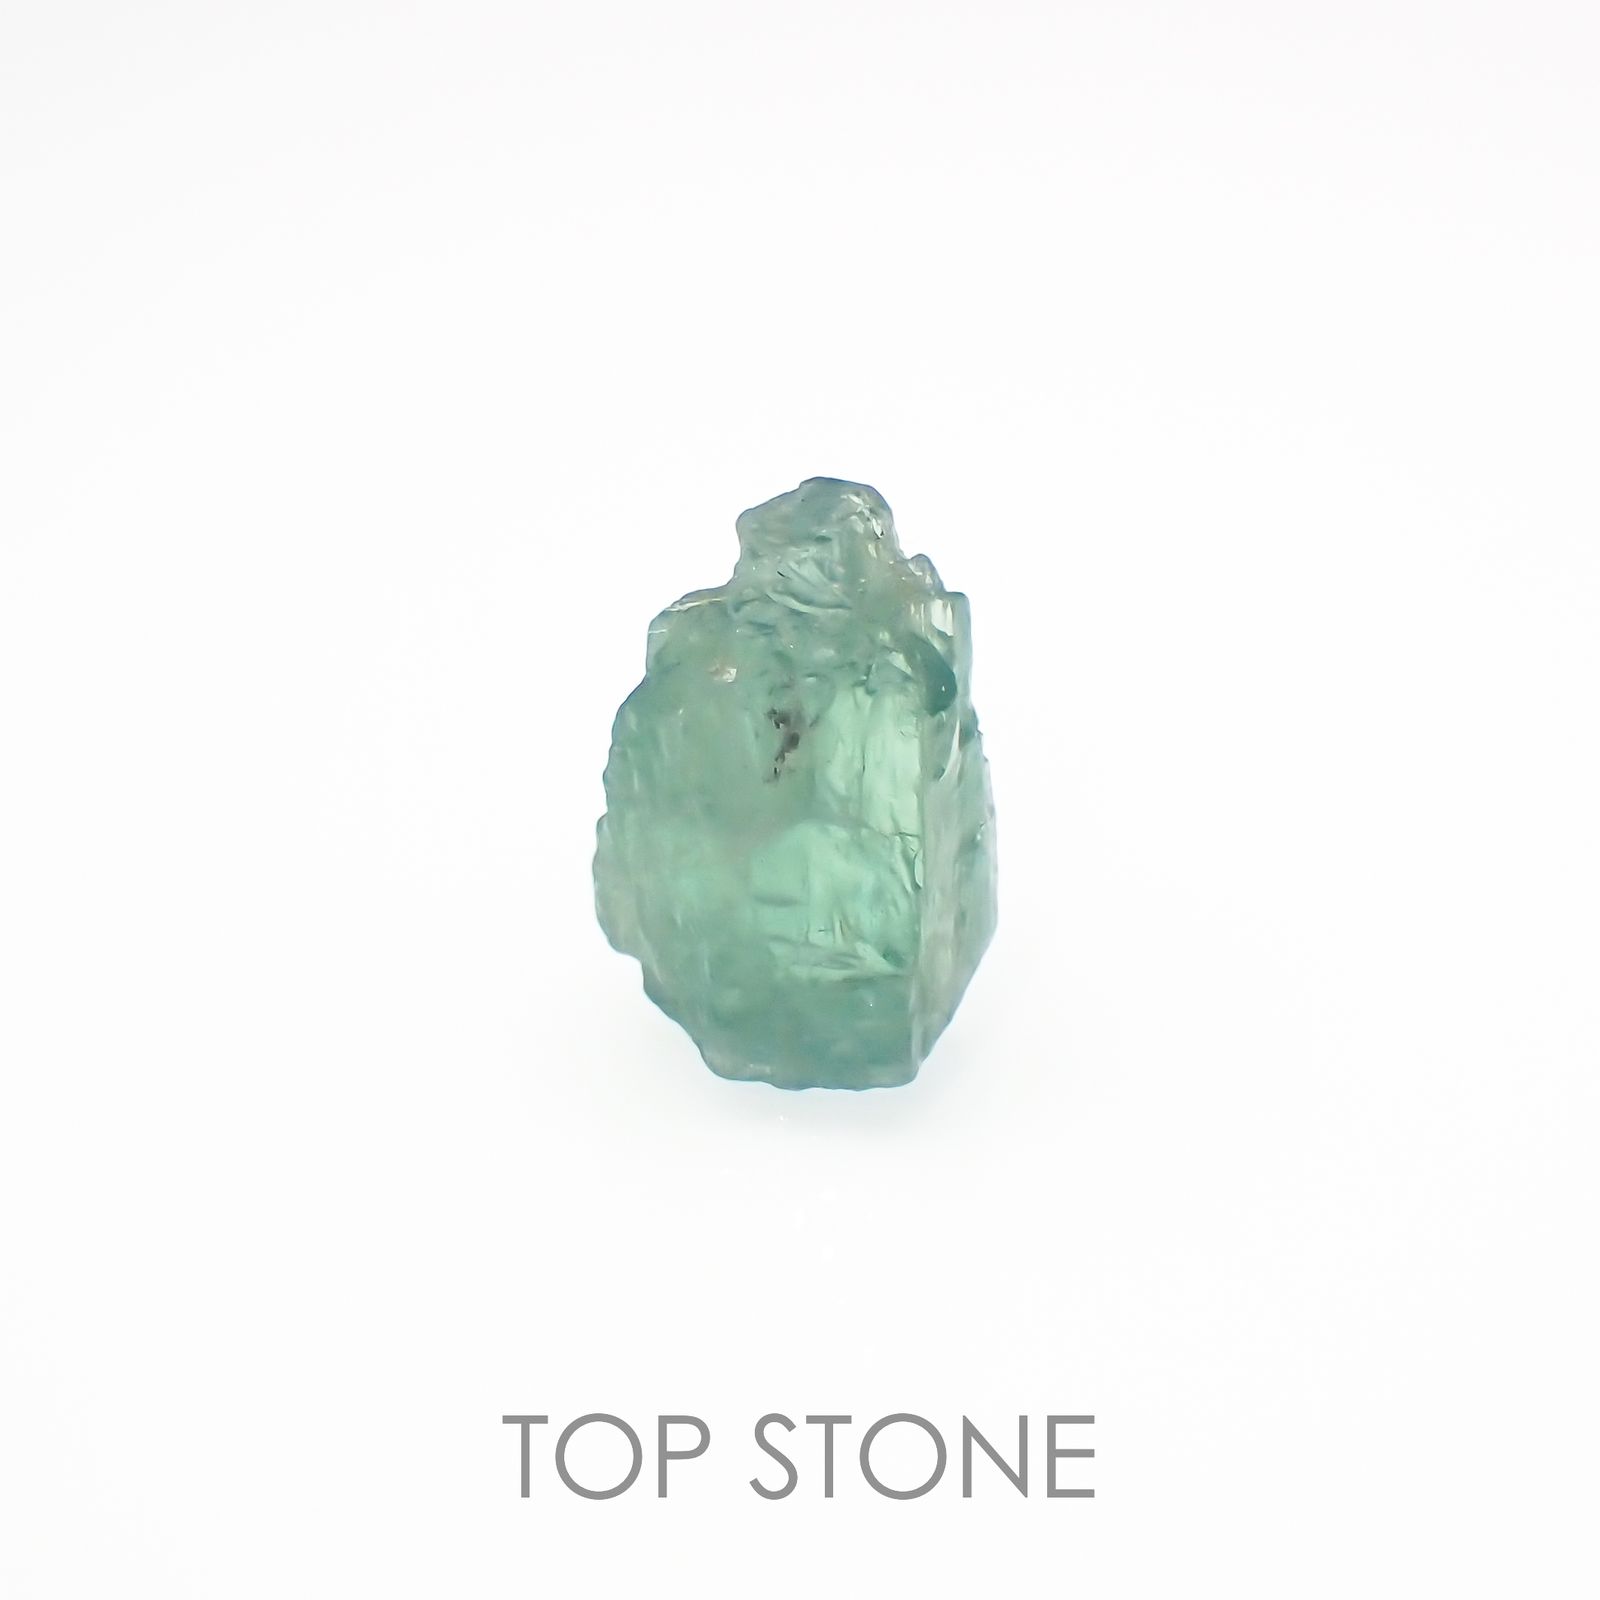 ブルーグリーンコーネルピン 原石 タンザニア産 3.44ct[221219198]10.2x7mm前後 | TOP STONE(トップストーン)